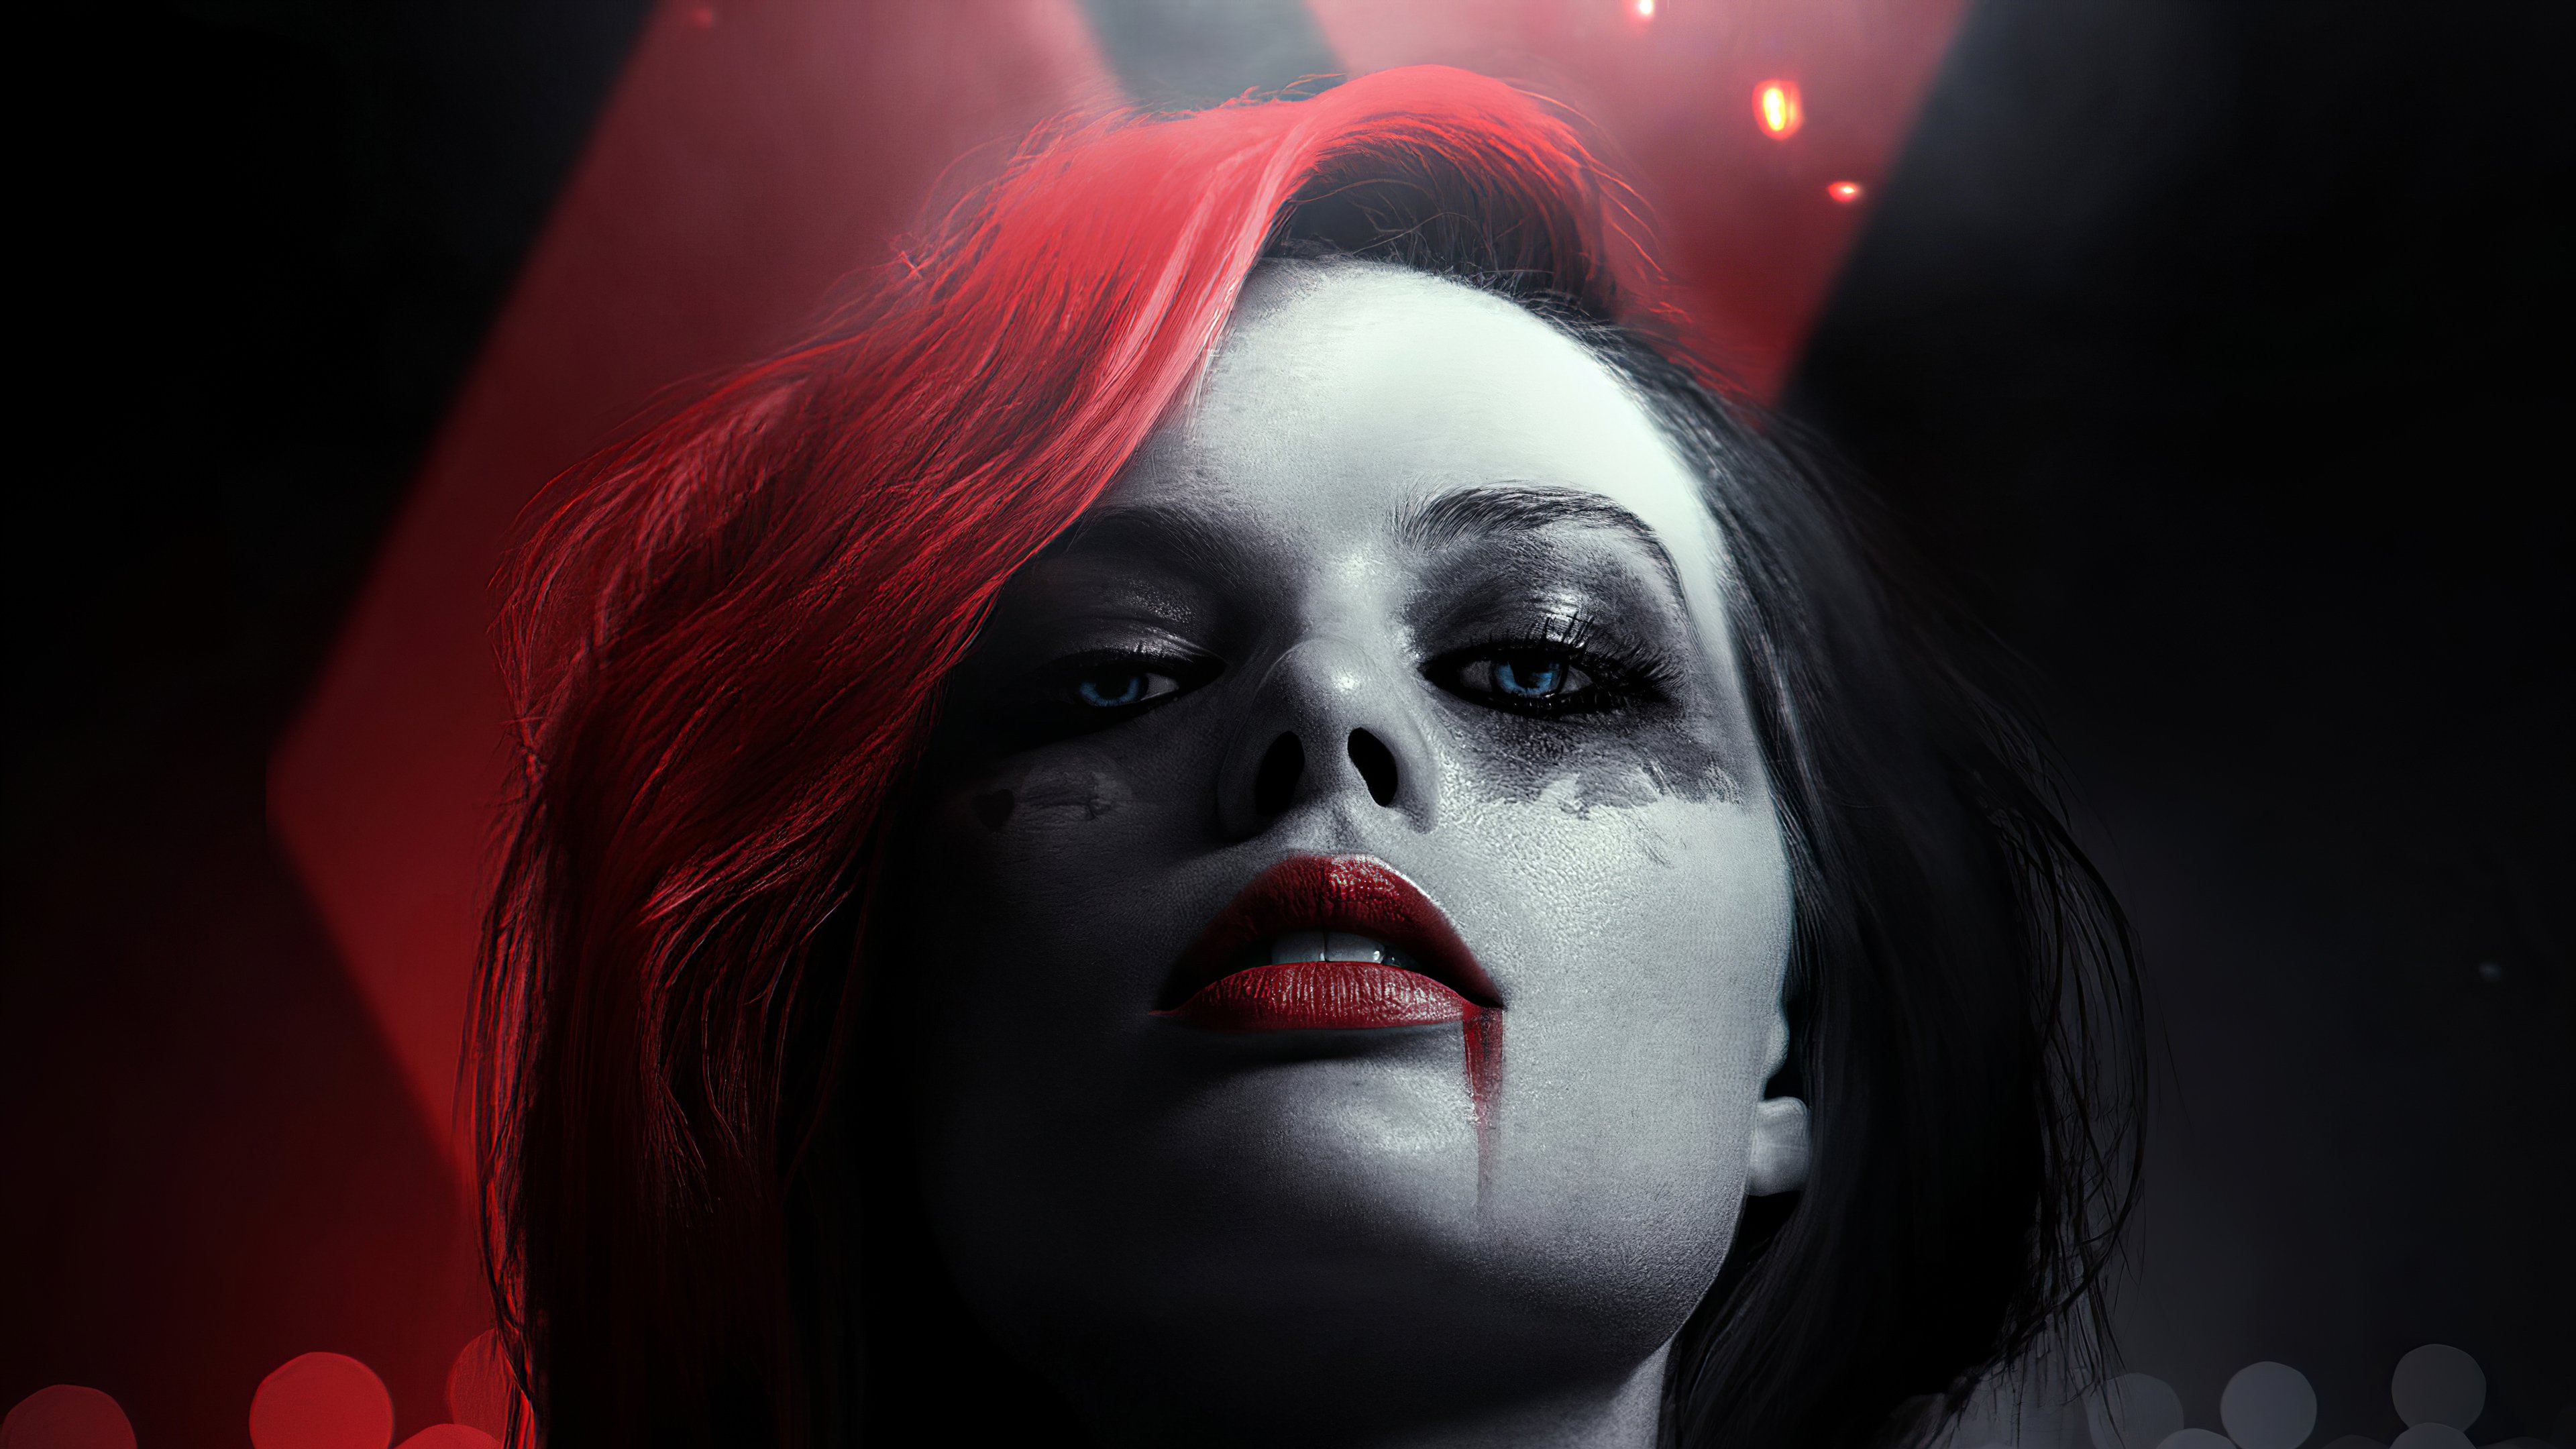 Fondos de pantalla Margot Robbie como Harley Quinn